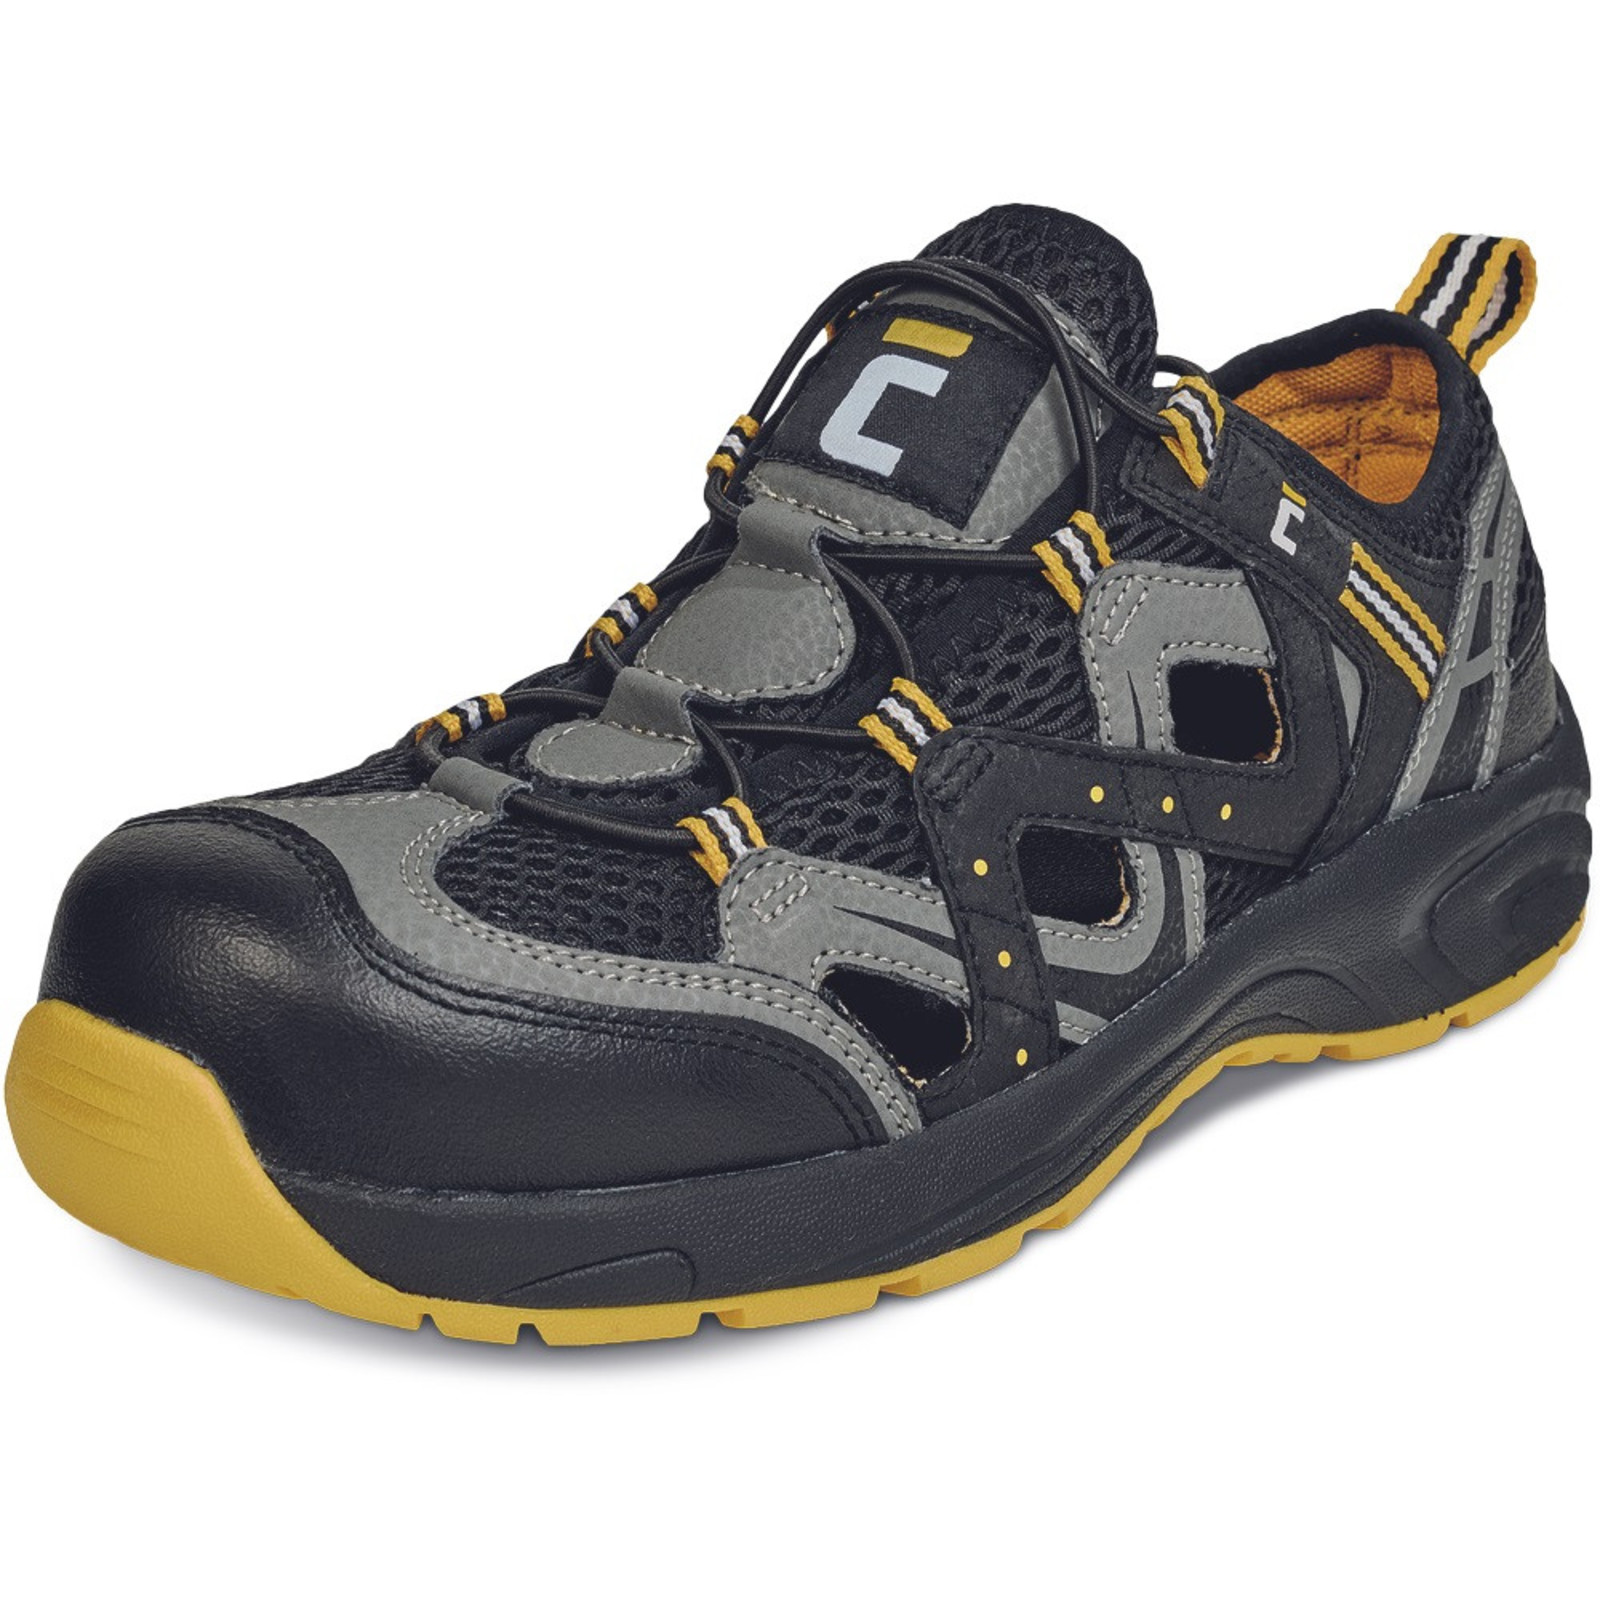 Pracovné sandále Cerva Henford O1 SRC - veľkosť: 36, farba: čierna/žltá